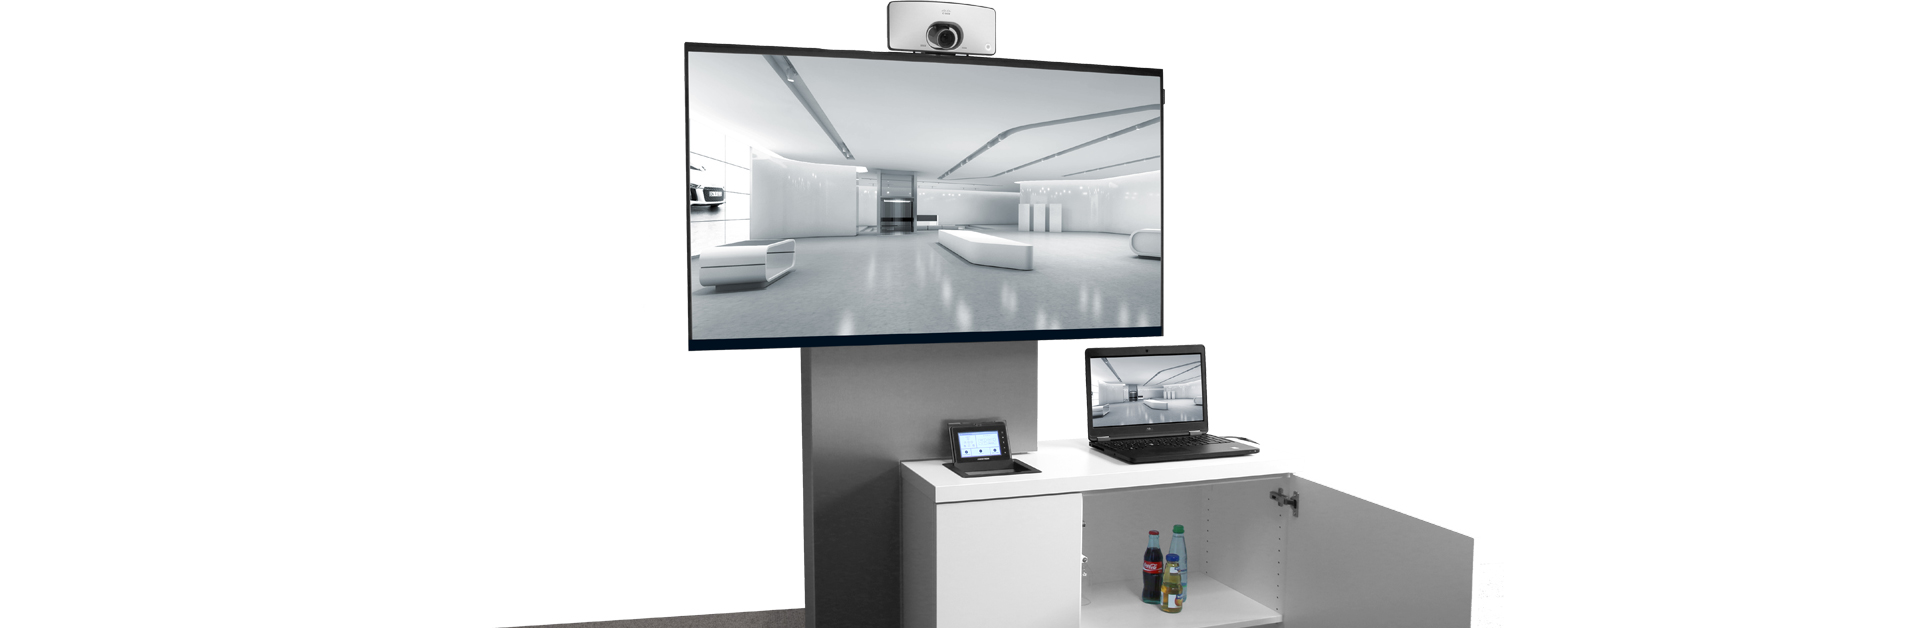 Header: Medienstele mit Videokonferenzkamera, Mediensteuerung, Notebook und Technikschrank